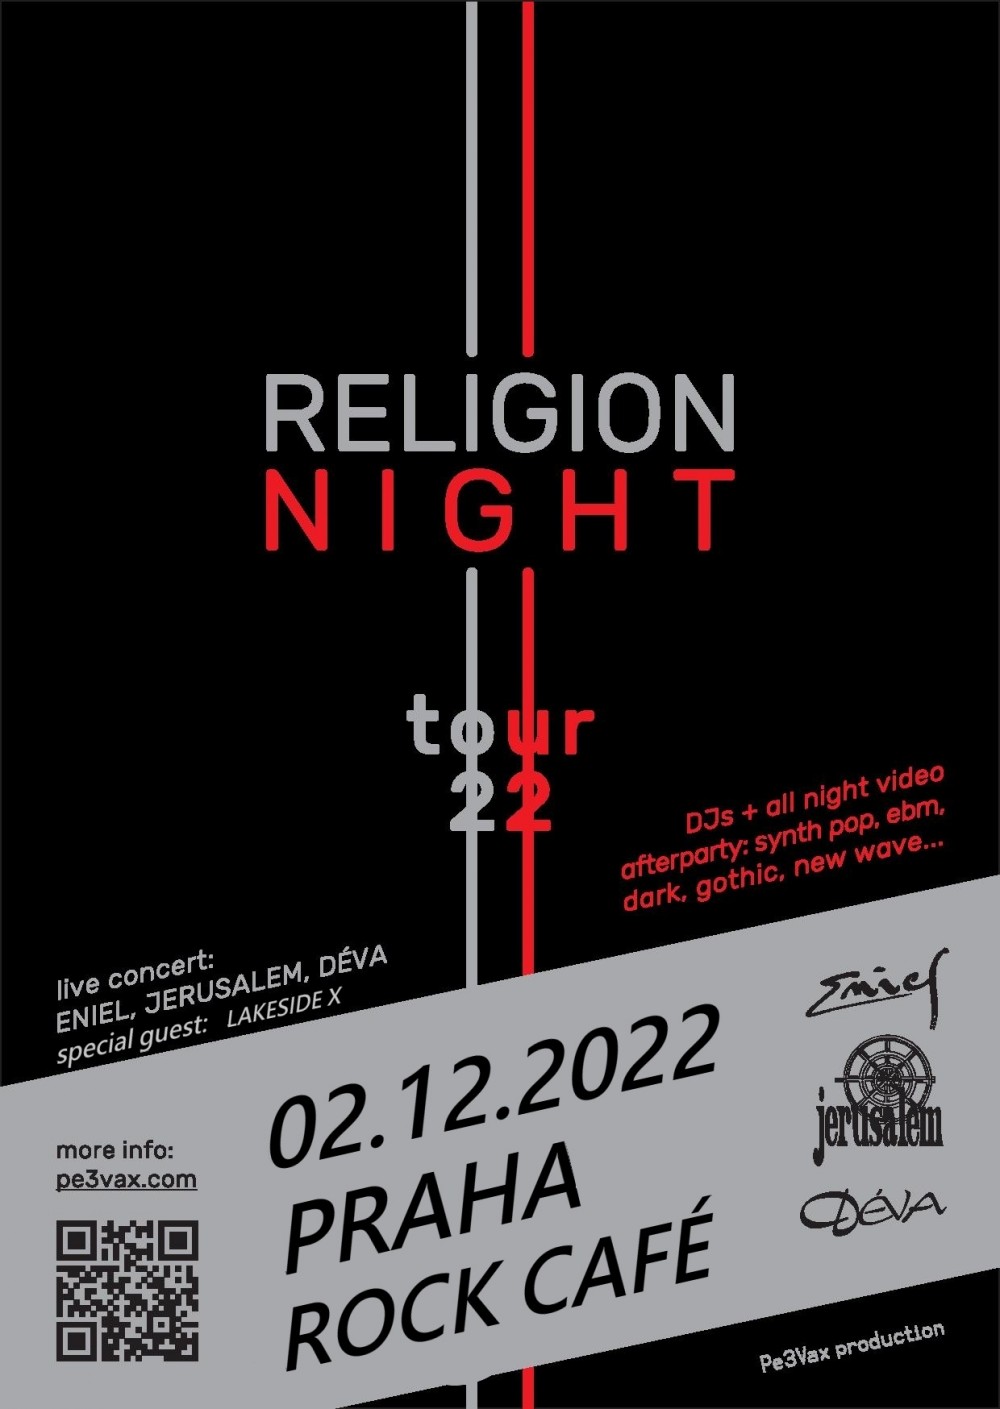 Plagát akcie: Religion Night Tour